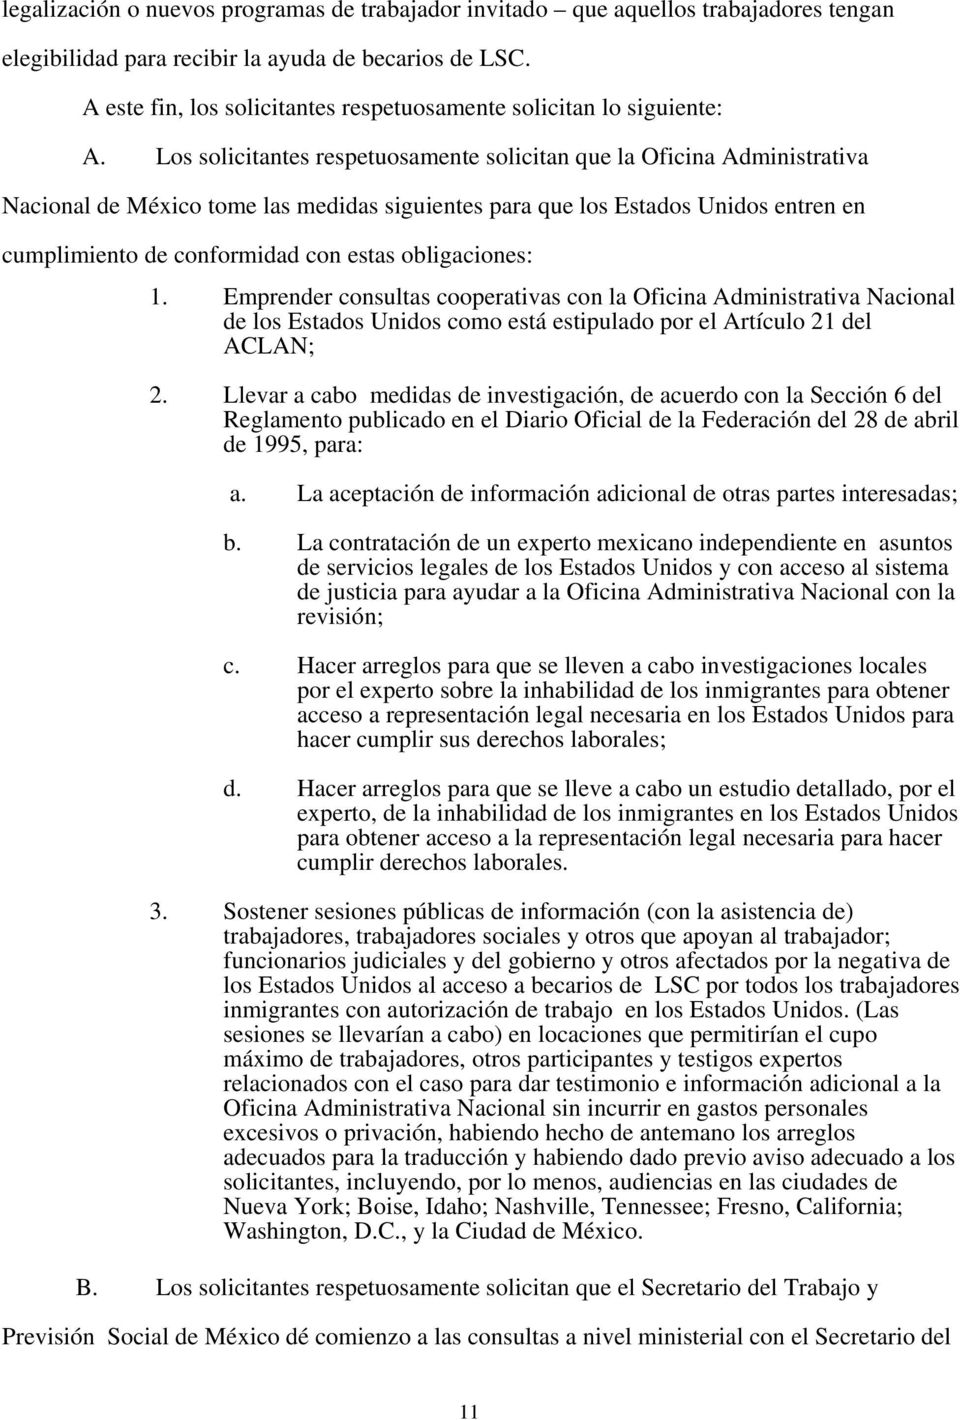 Los solicitantes respetuosamente solicitan que la Oficina Administrativa Nacional de México tome las medidas siguientes para que los Estados Unidos entren en cumplimiento de conformidad con estas